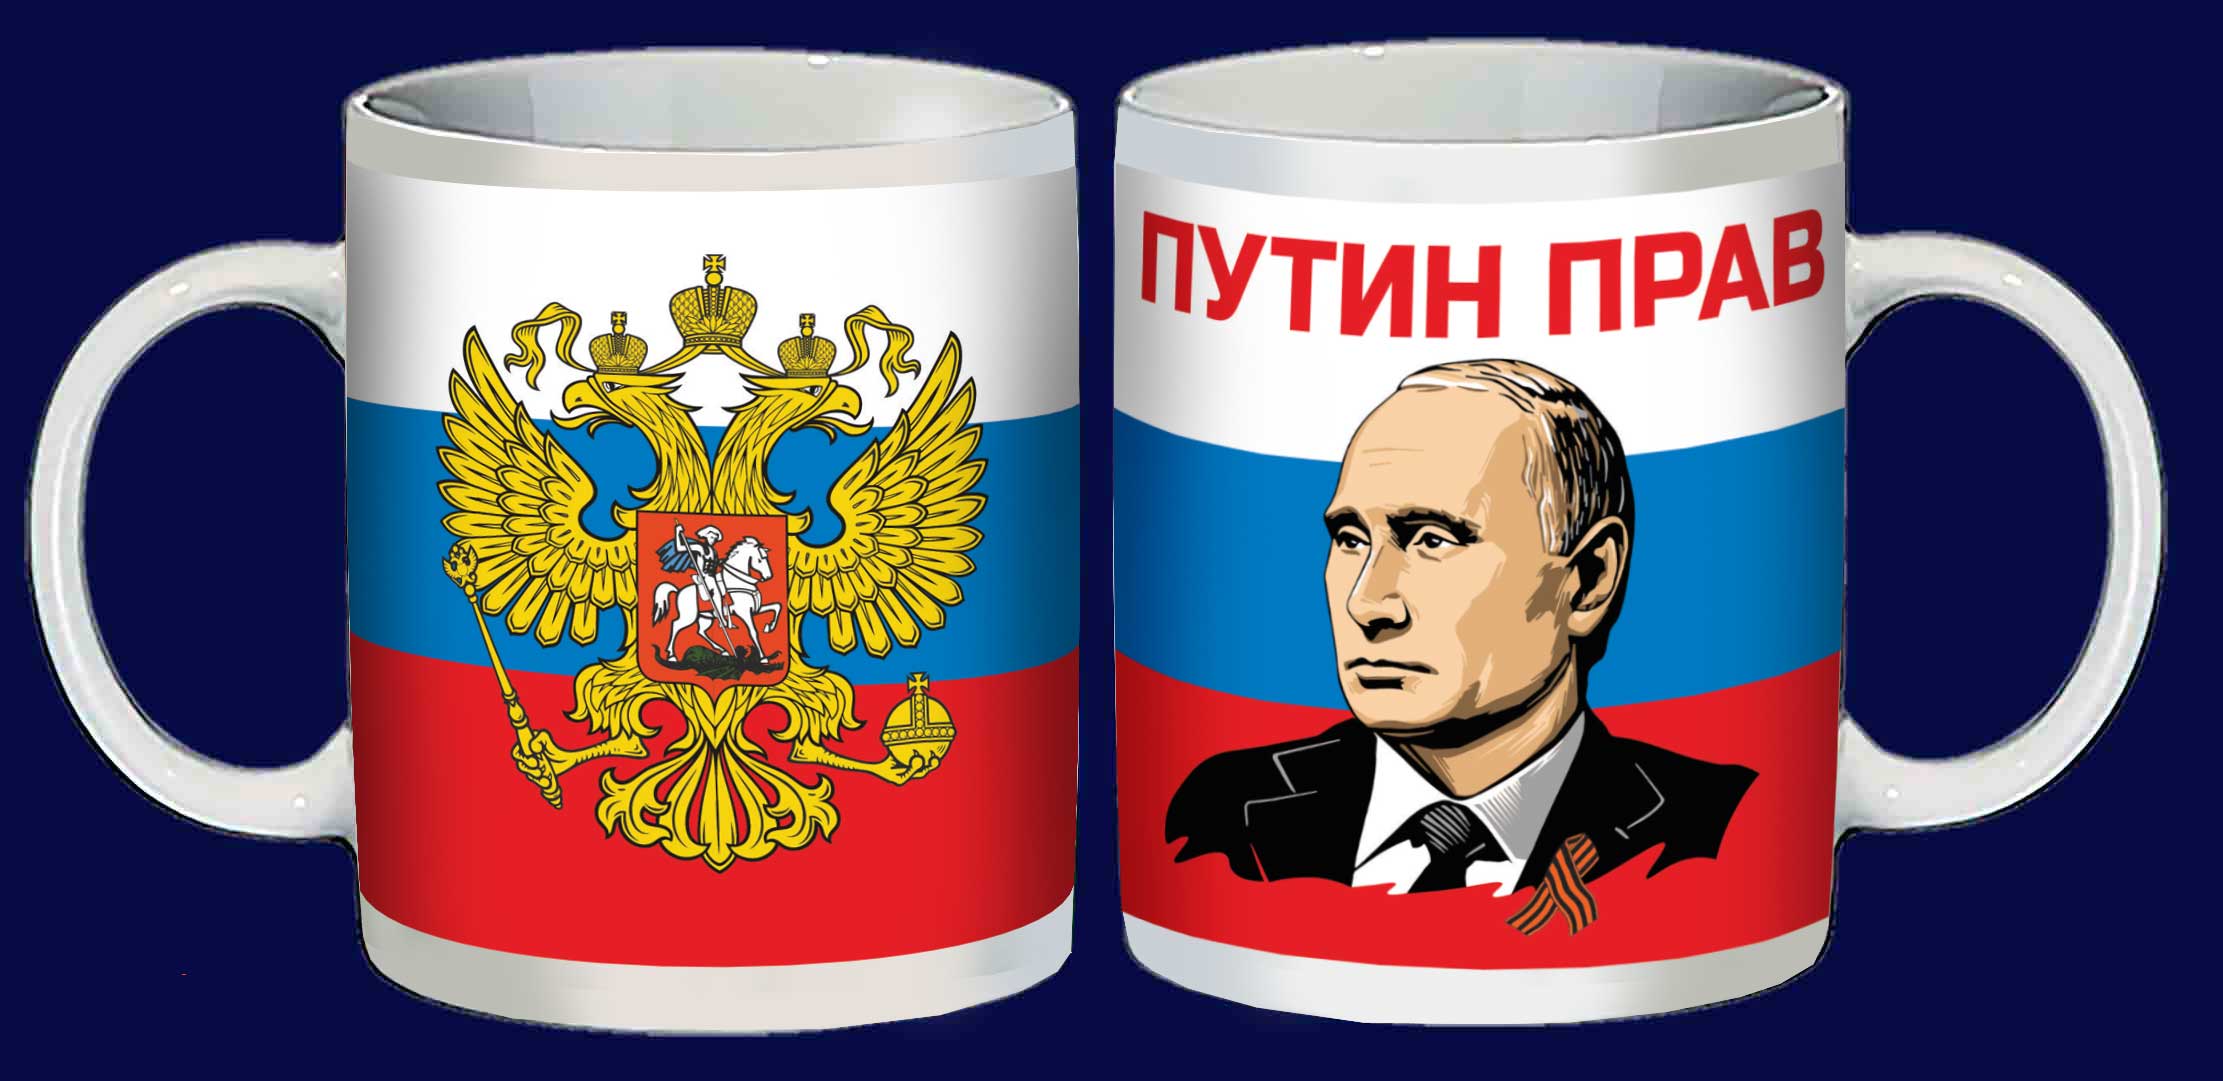 Купить патриотическую кружку "Путин прав" 